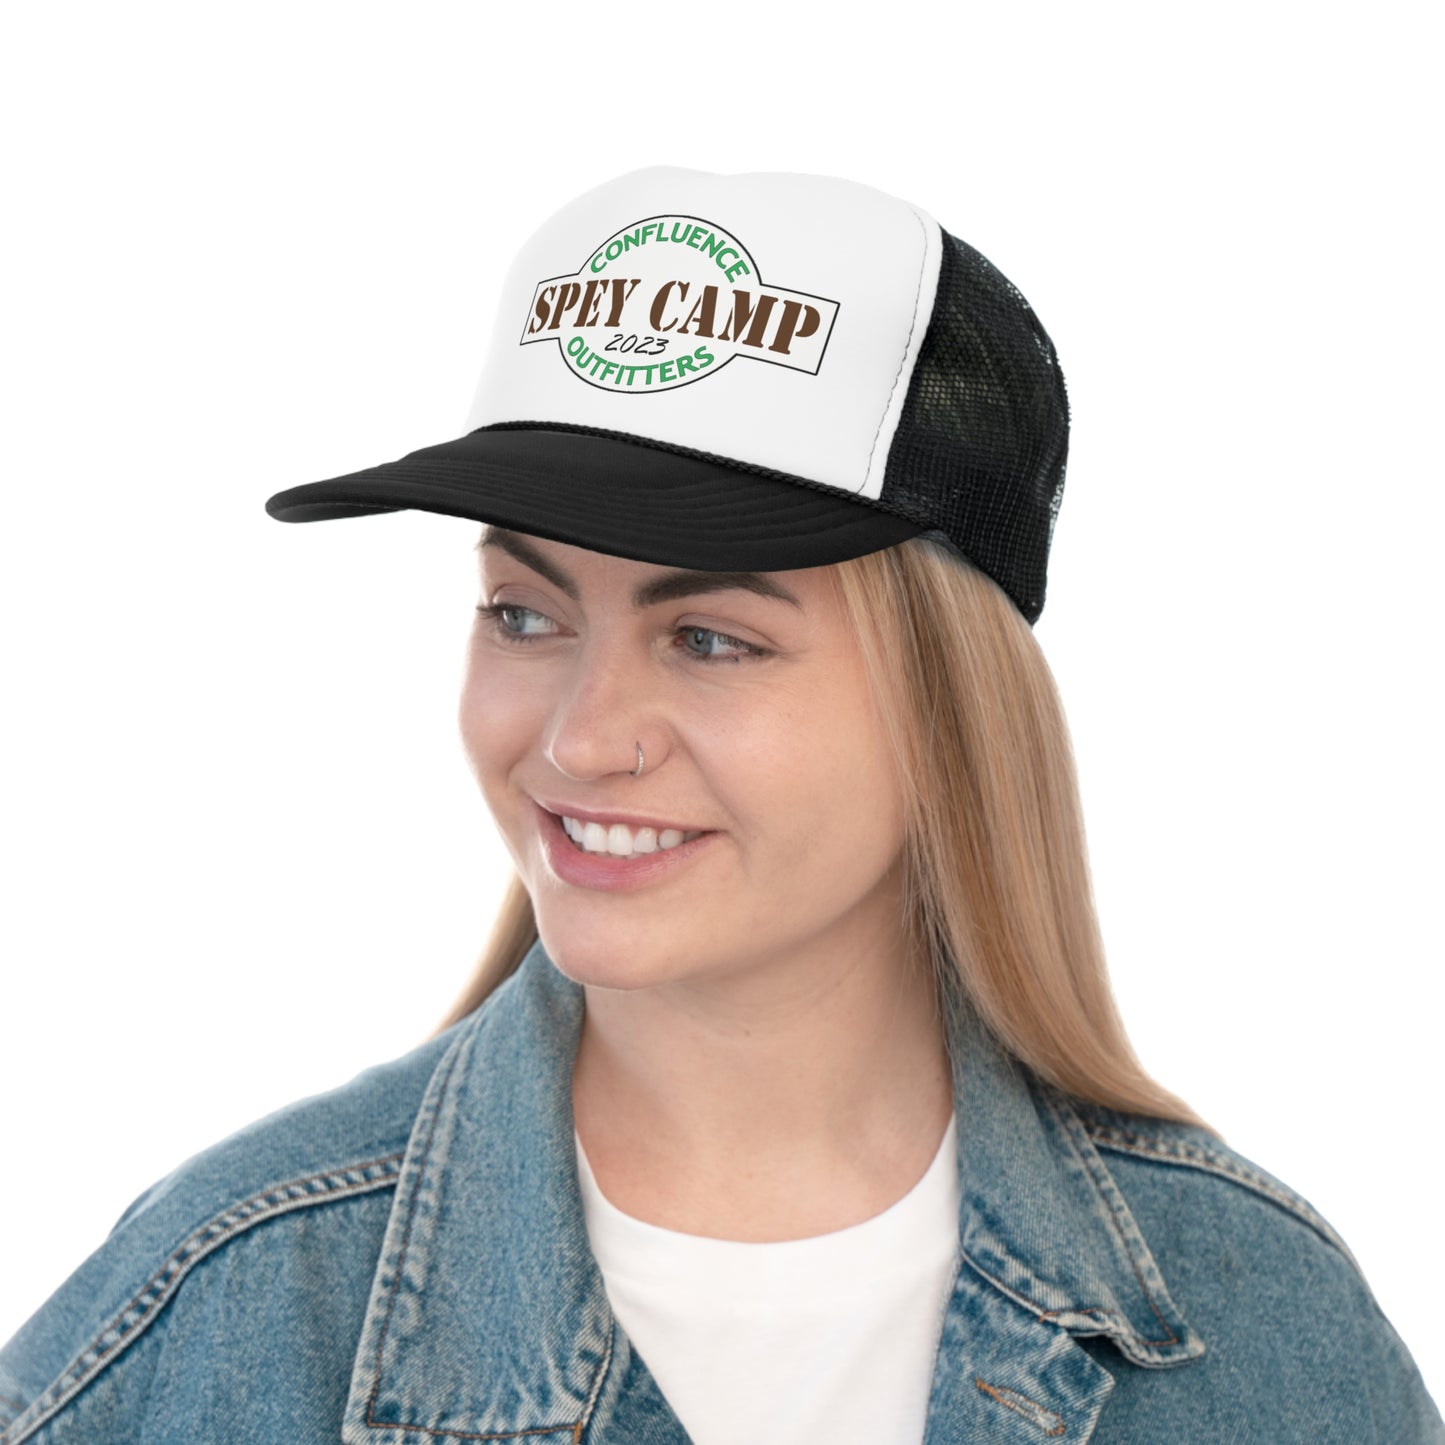 Spey Camp 2023 Trucker Hat